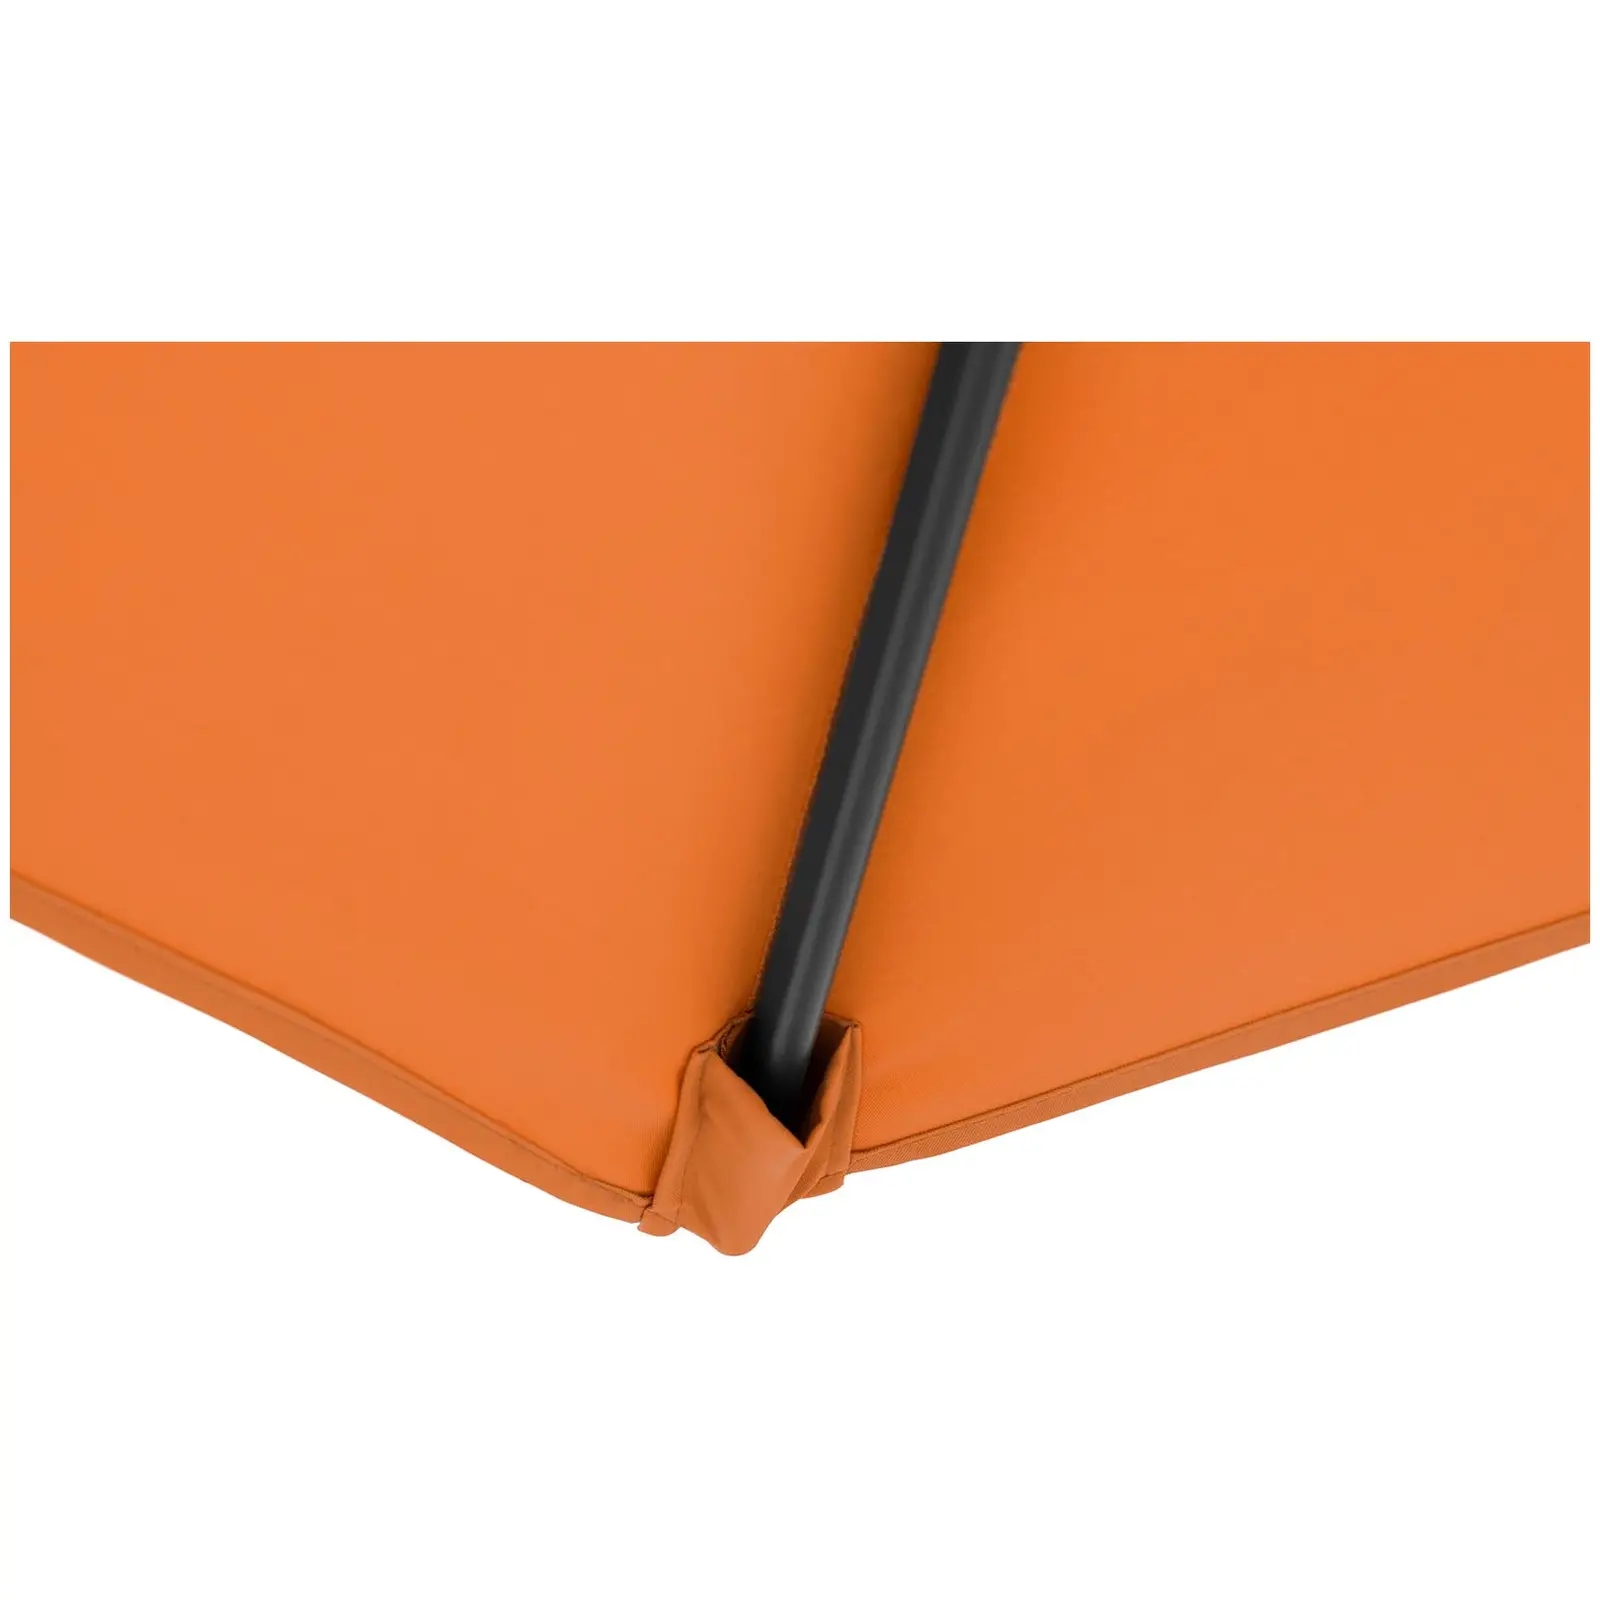 B-Ware Ampelschirm - Orange - rund - Ø 300 cm - neigbar